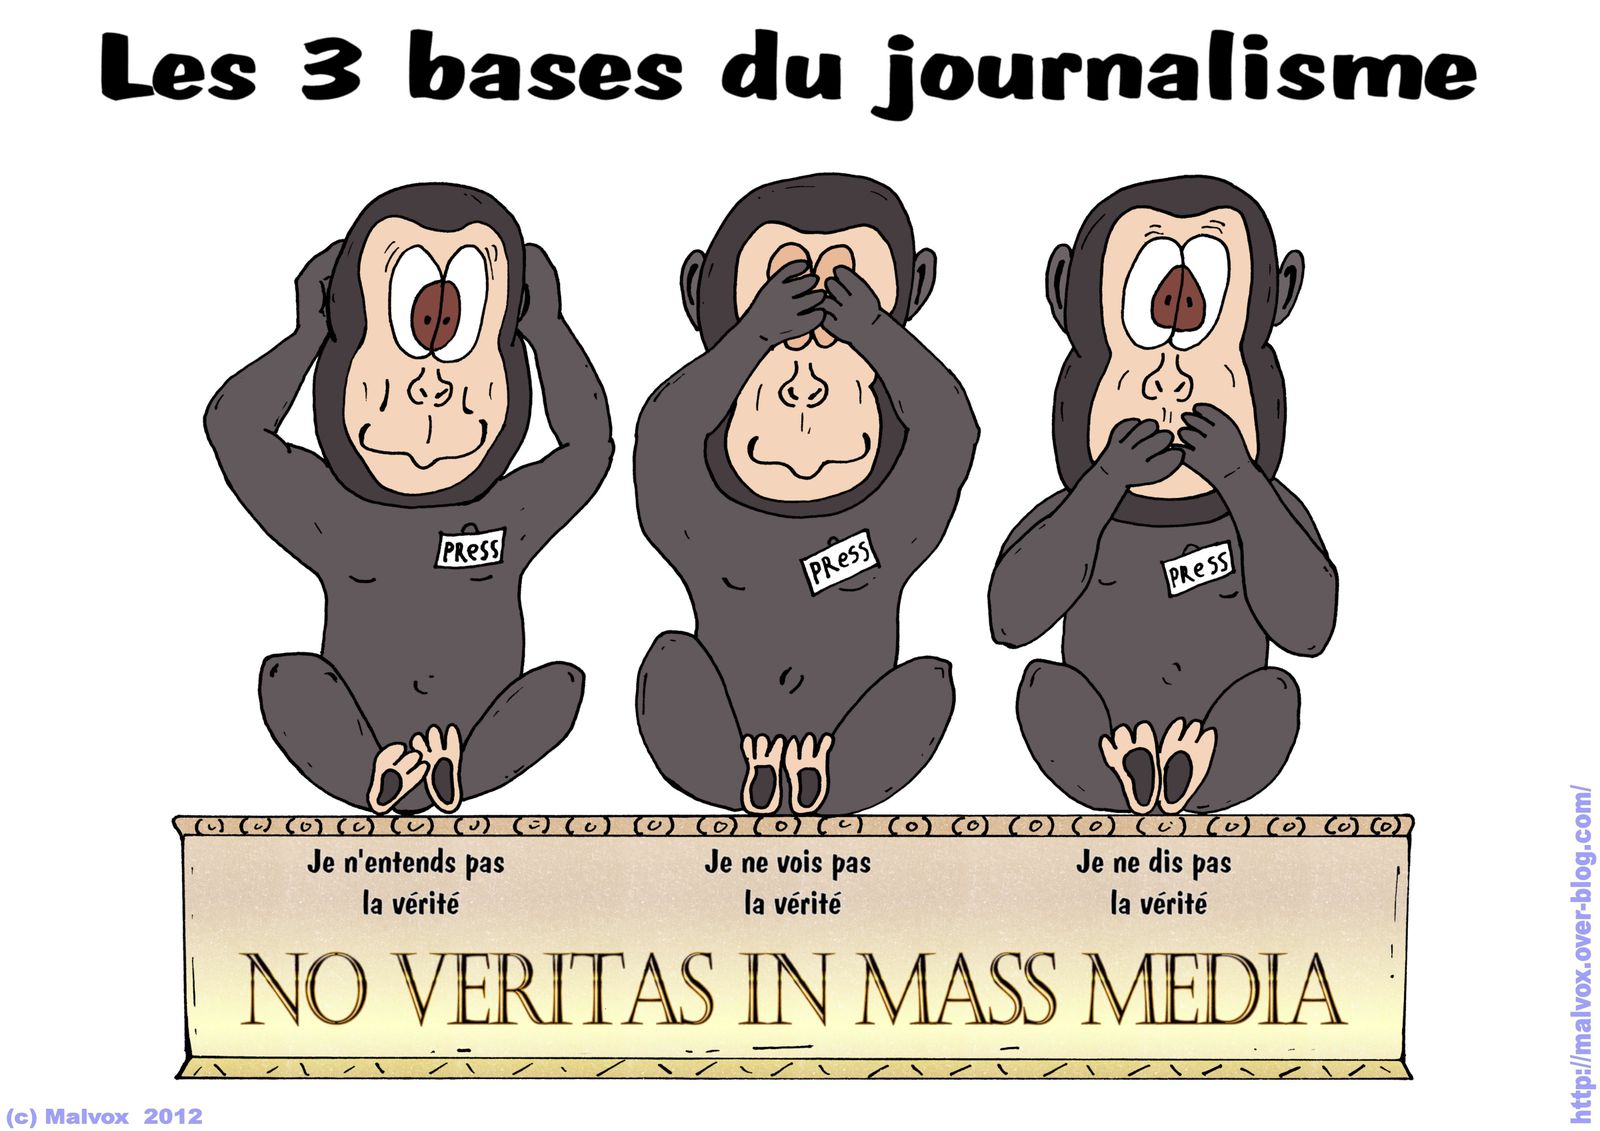 Les 3 bases du journalisme ou les trois petits singes médiacrates - Le blog  de Malvox (blog fermé en décembre 2013 - blog closed in december 2013)